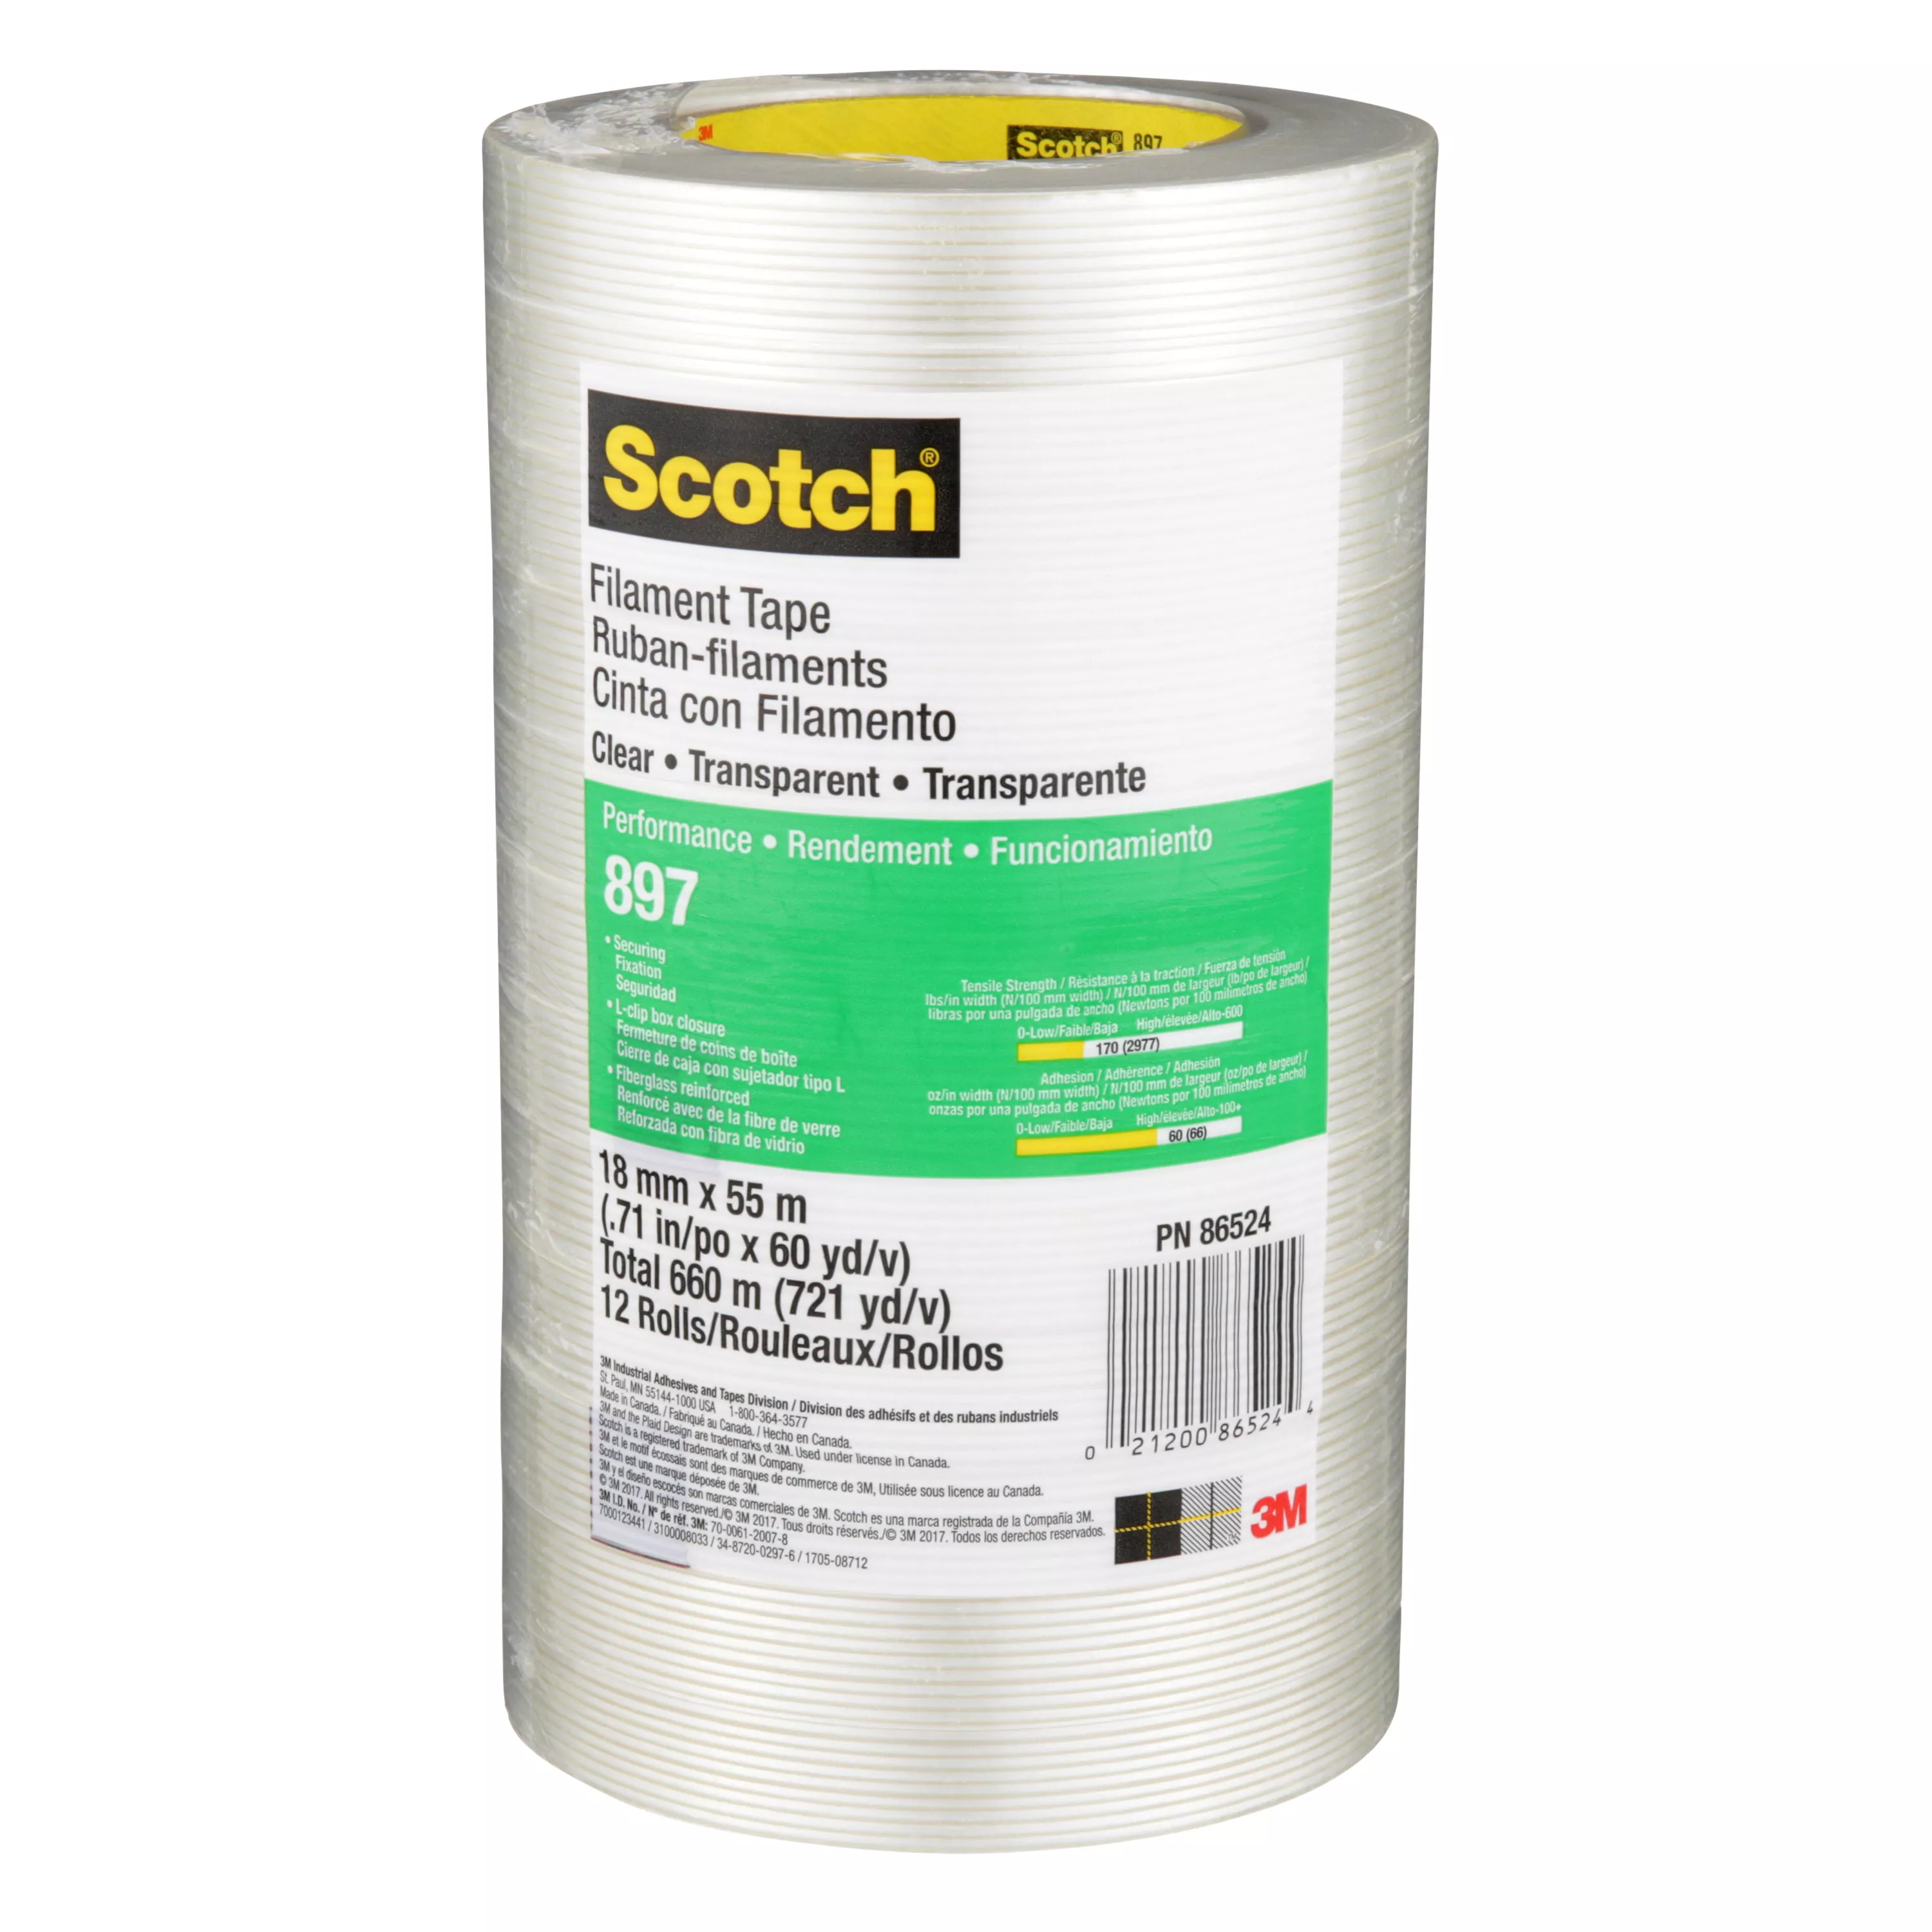 SKU 7000123441 | Scotch® Filament Tape 897